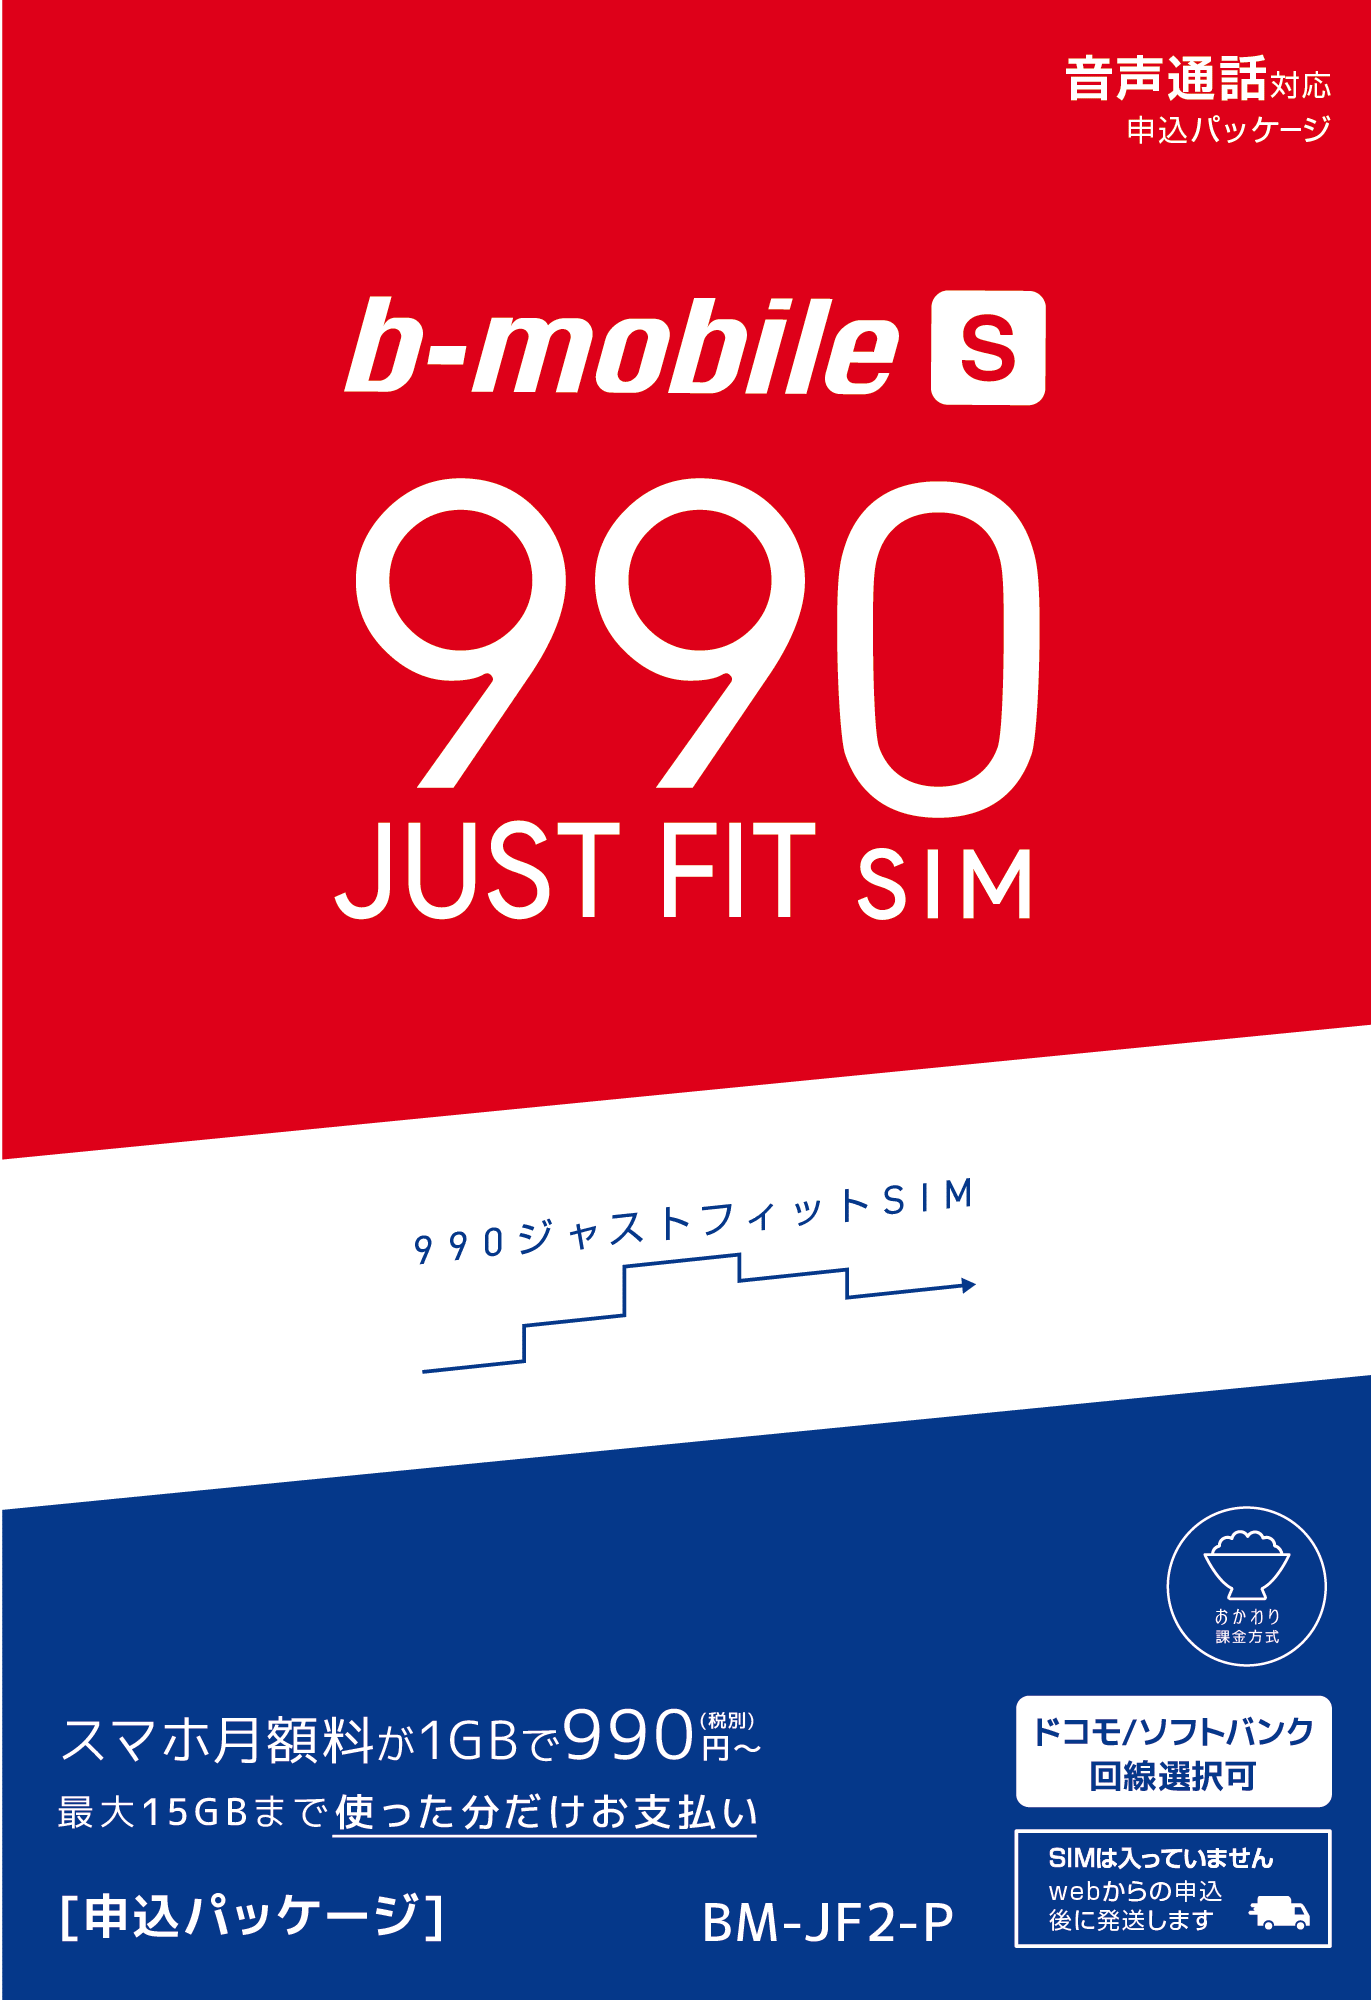 日本通信、月額990円からソフトバンクのSIMロックiPhoneで使えるSIMを 